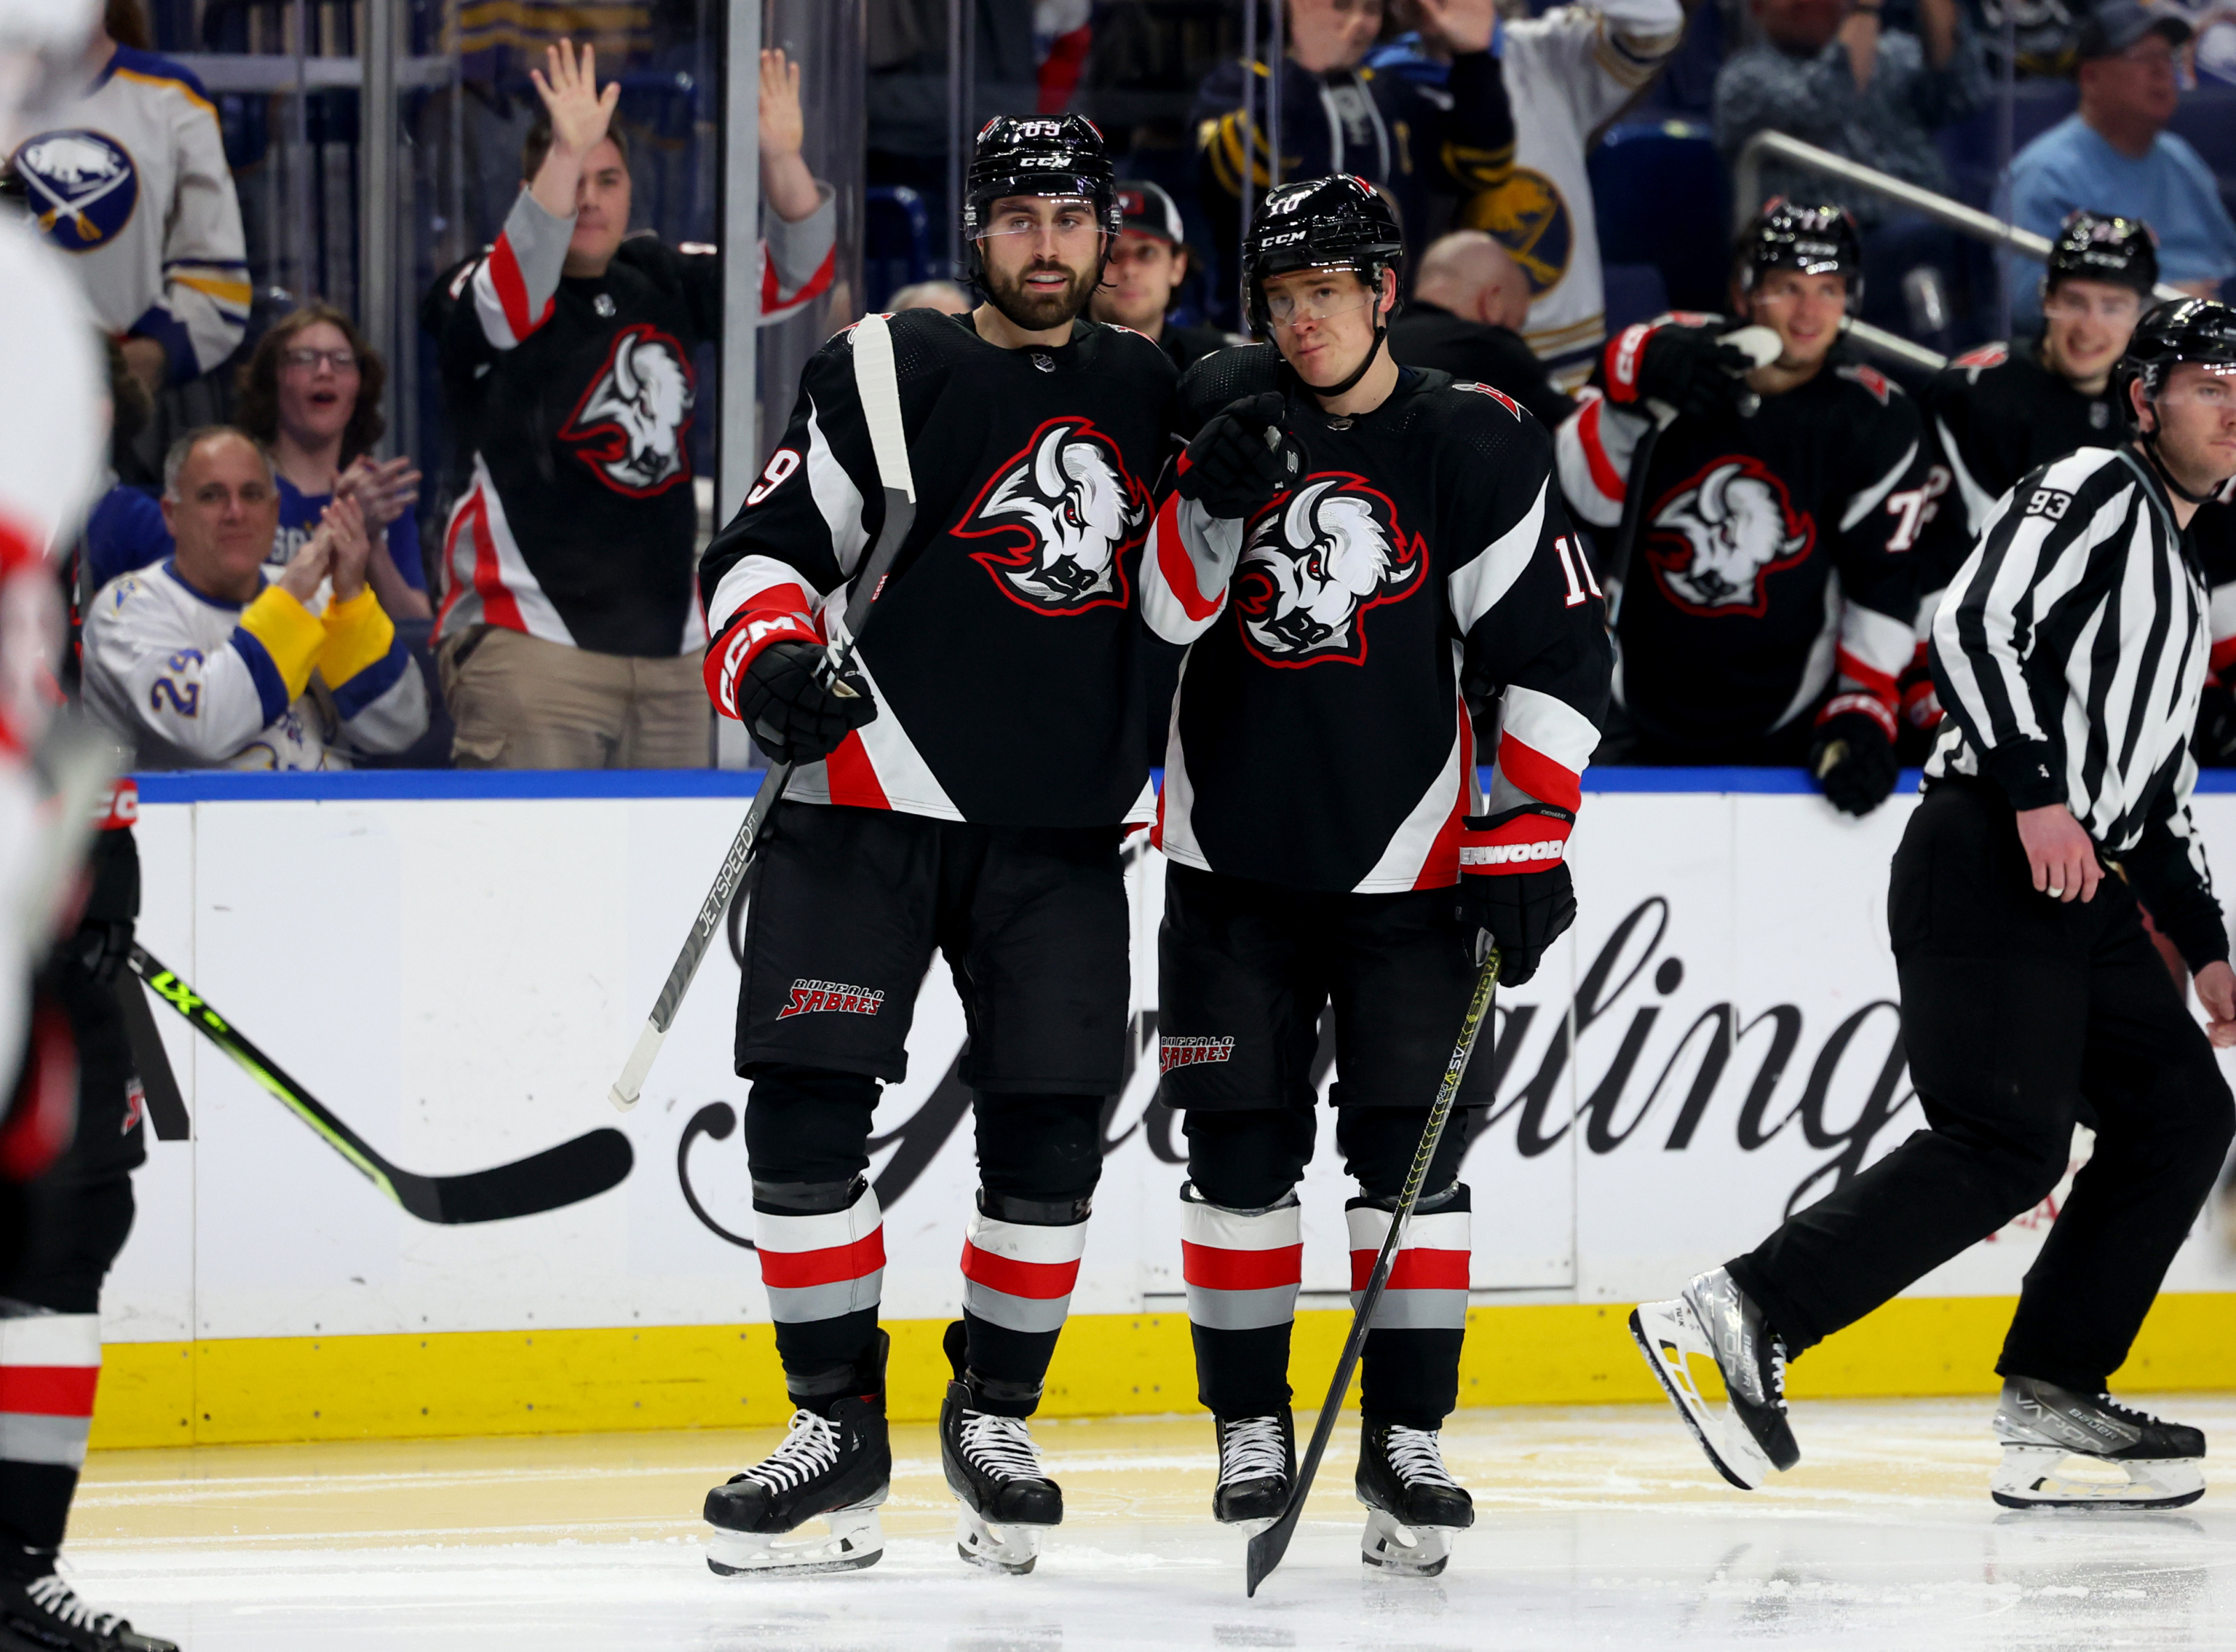 NHL: Buffalo Sabres seek playoff return as NHL season begins